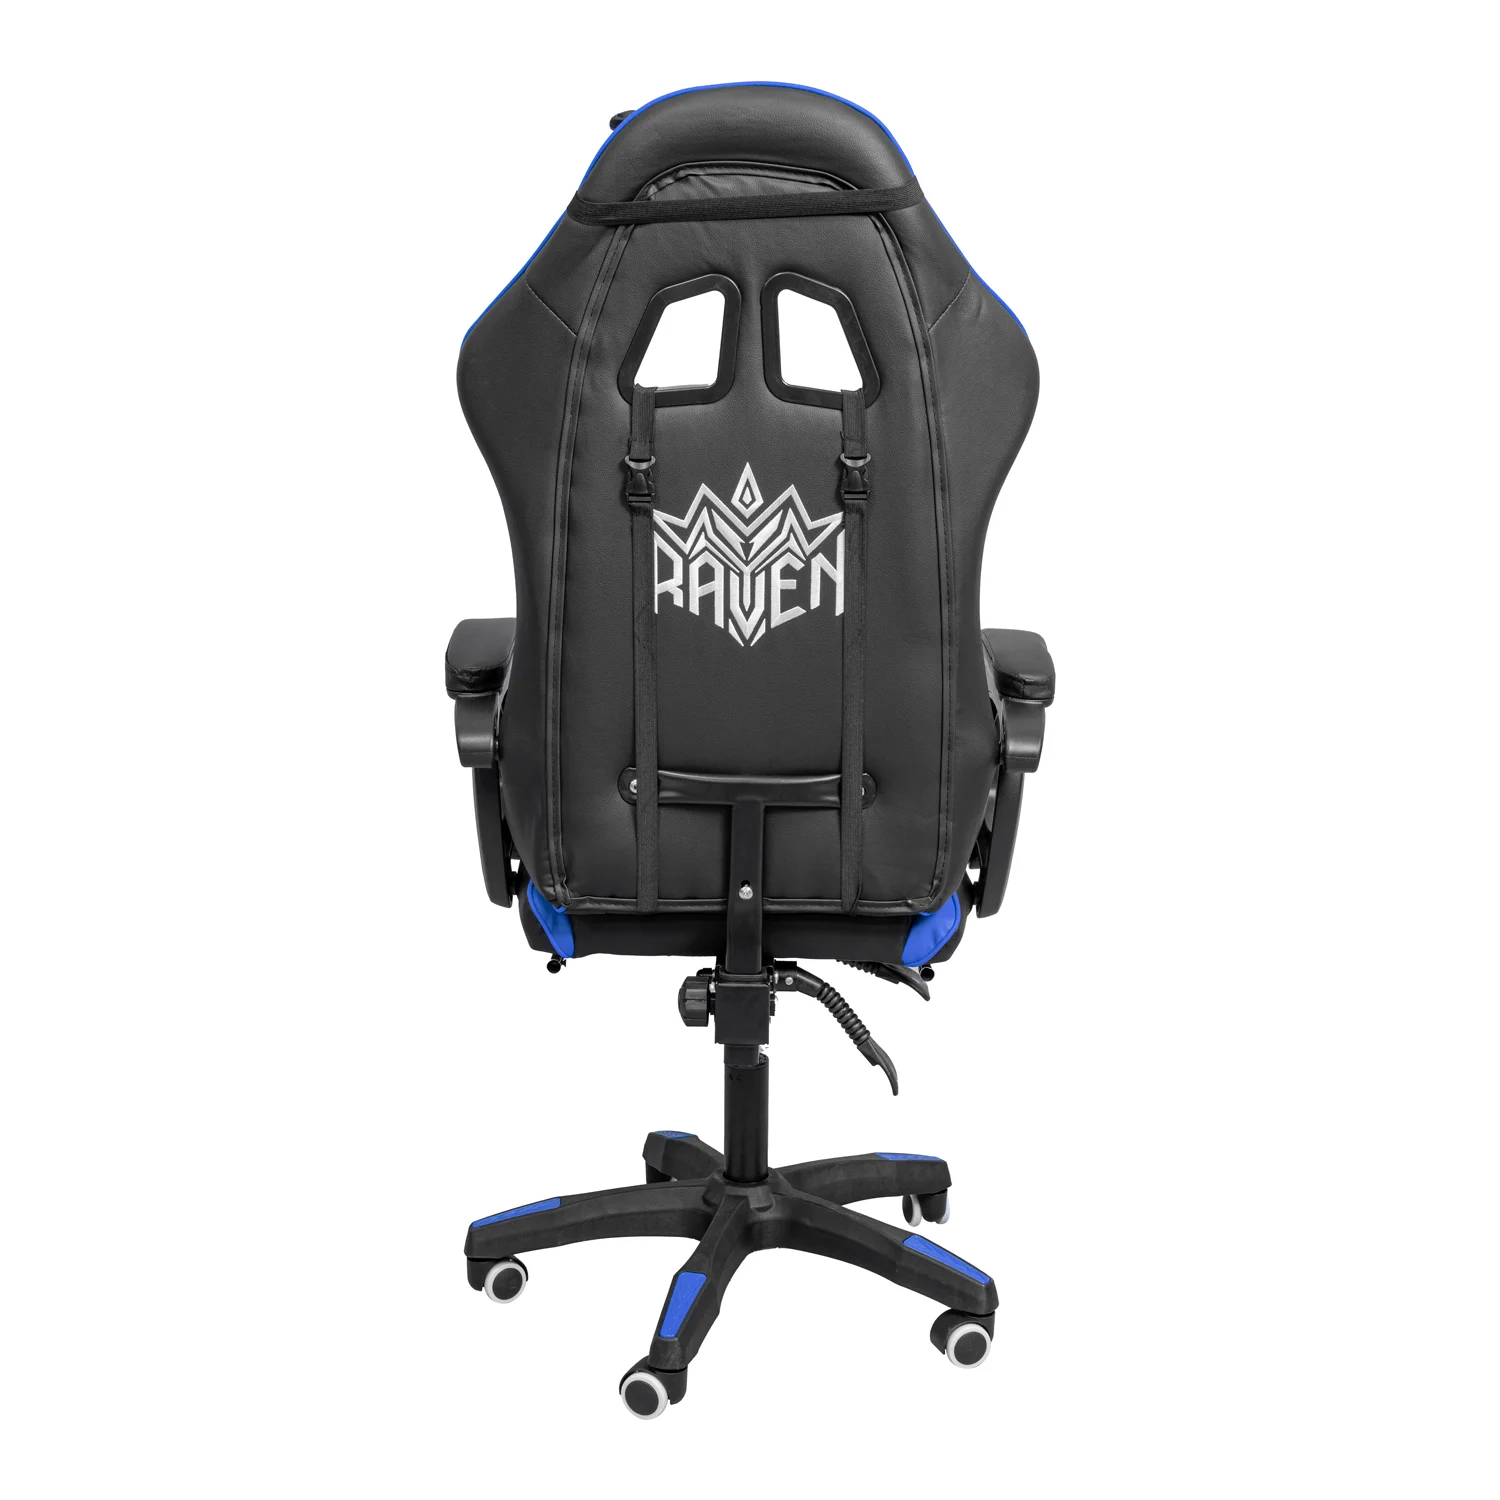 Gamer szék, forgószék lábtartóval fekete-kék (919)